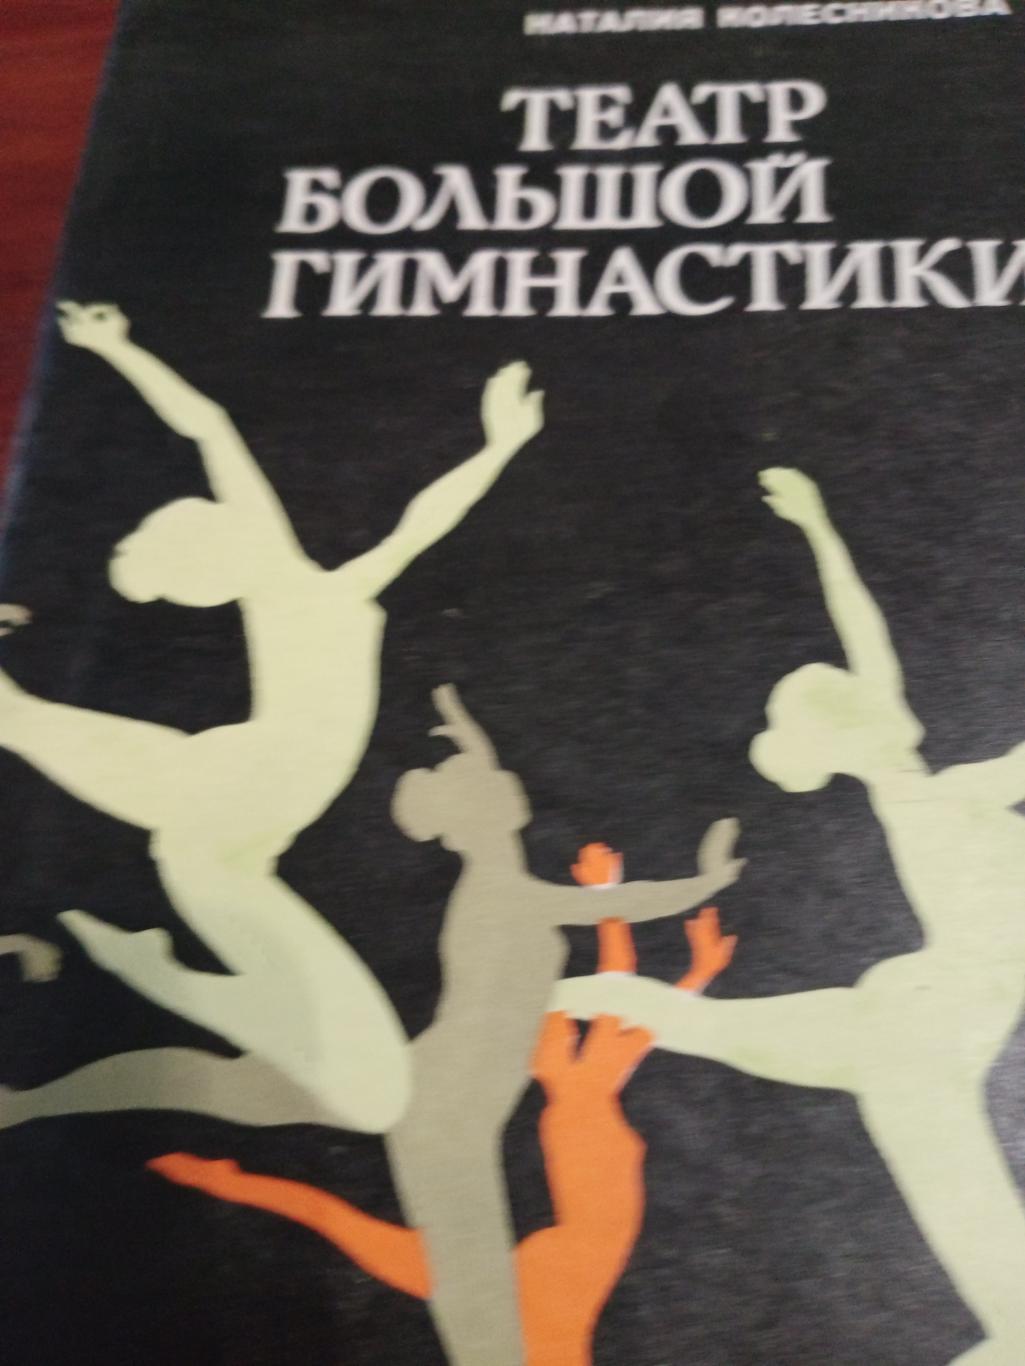 Н.Колесникова. Театр большой гимнастики. Издание 1981 года